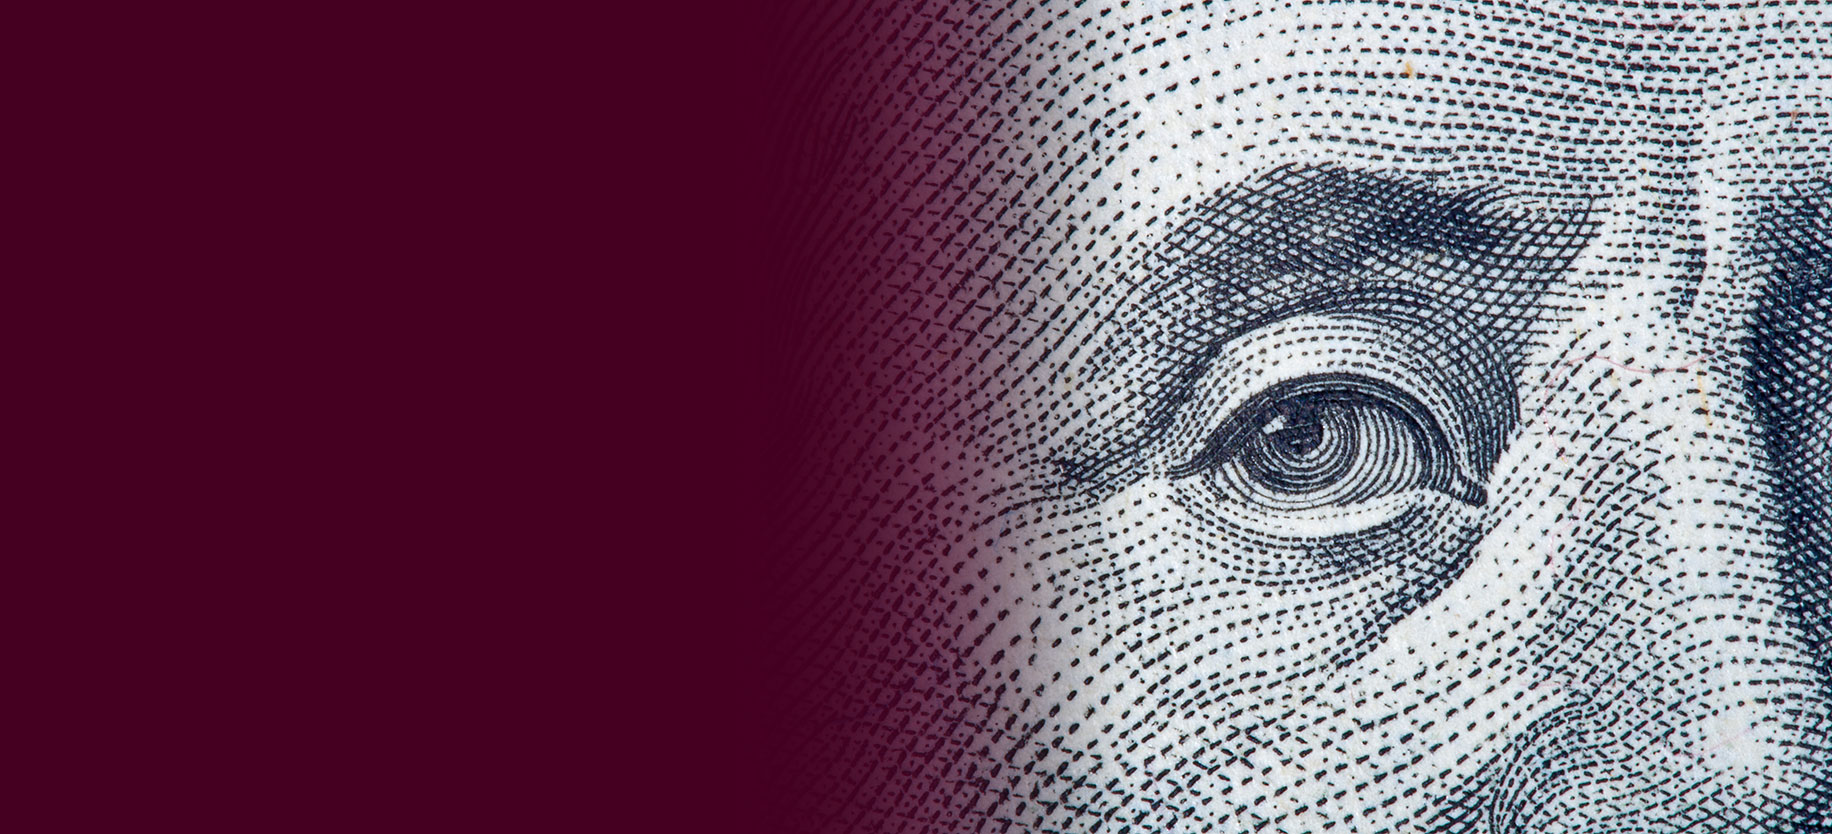 Gros plan de Ben Franklin sur le billet américain de 100 dollars